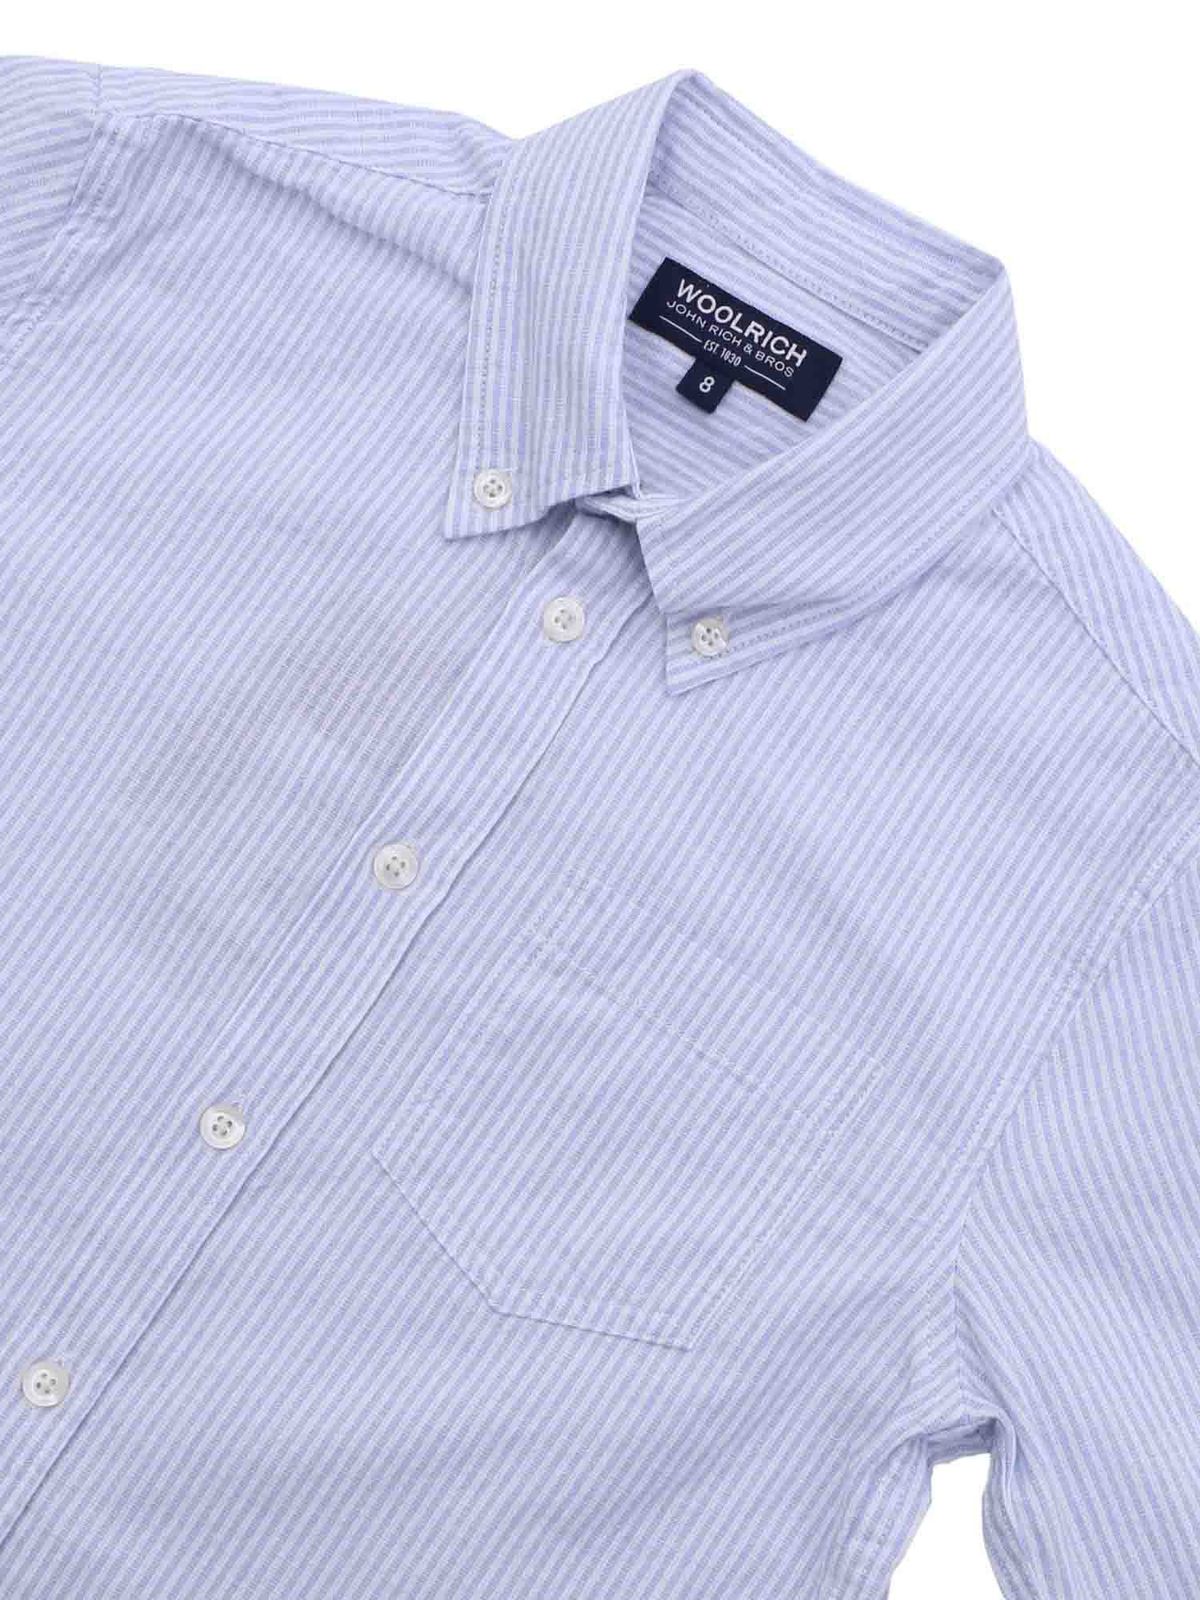 Shirts Woolrich - Striped linen blend shirt - WKCAM0500UT1526328